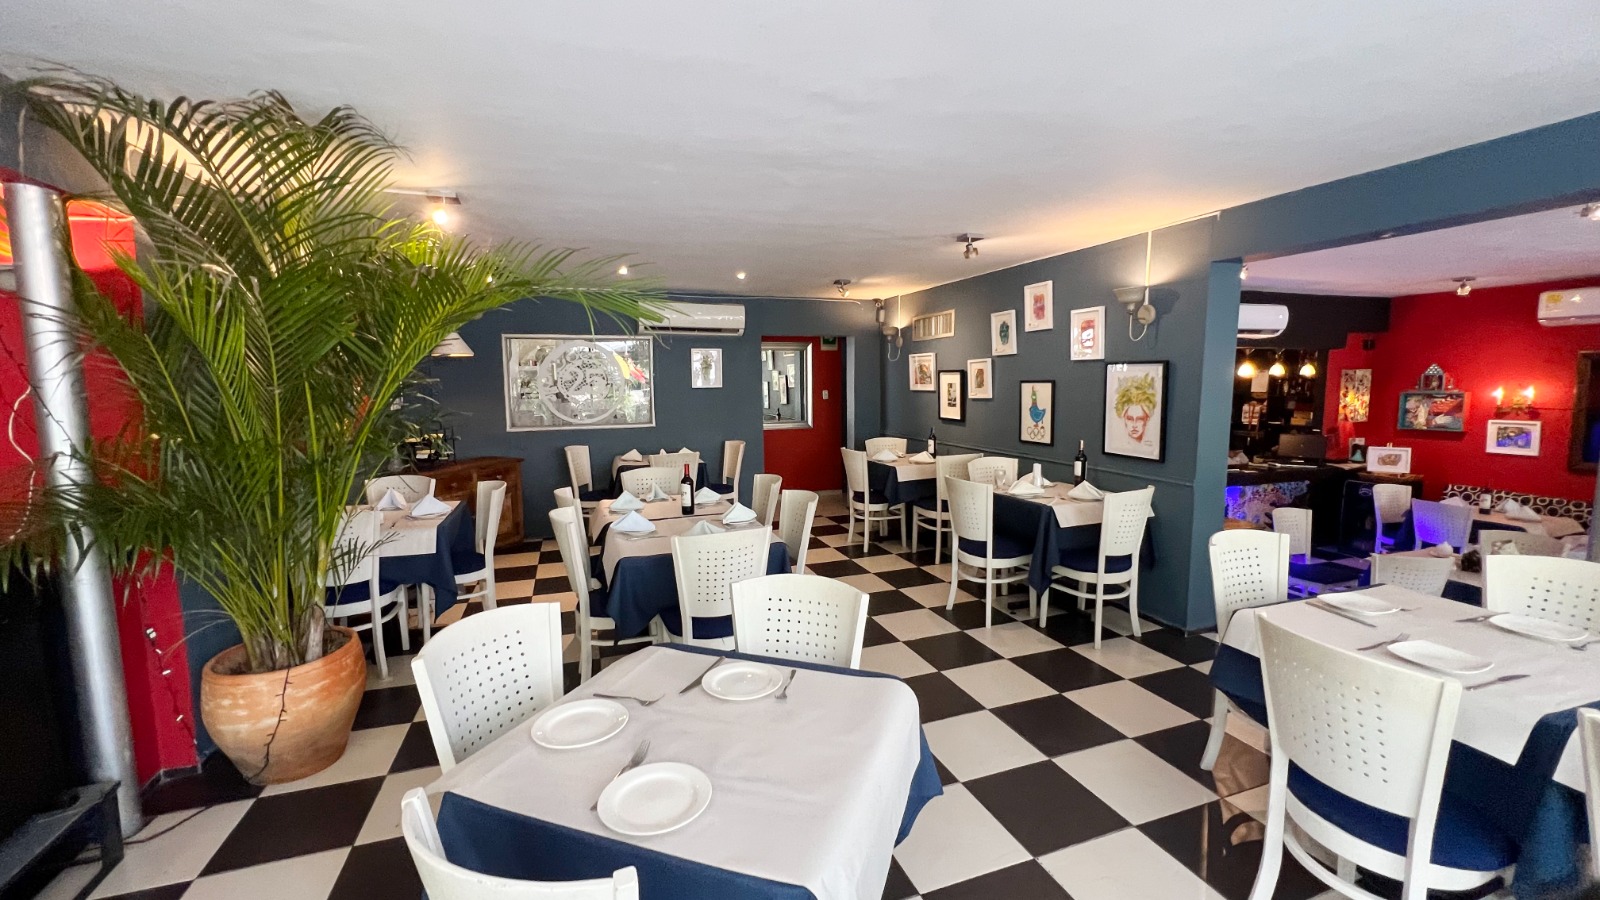 Nonna Rosa, restaurante-galería está ubicado en la carrera 53 #79-211, la casa de la familia Celia-Martínez Aparicio